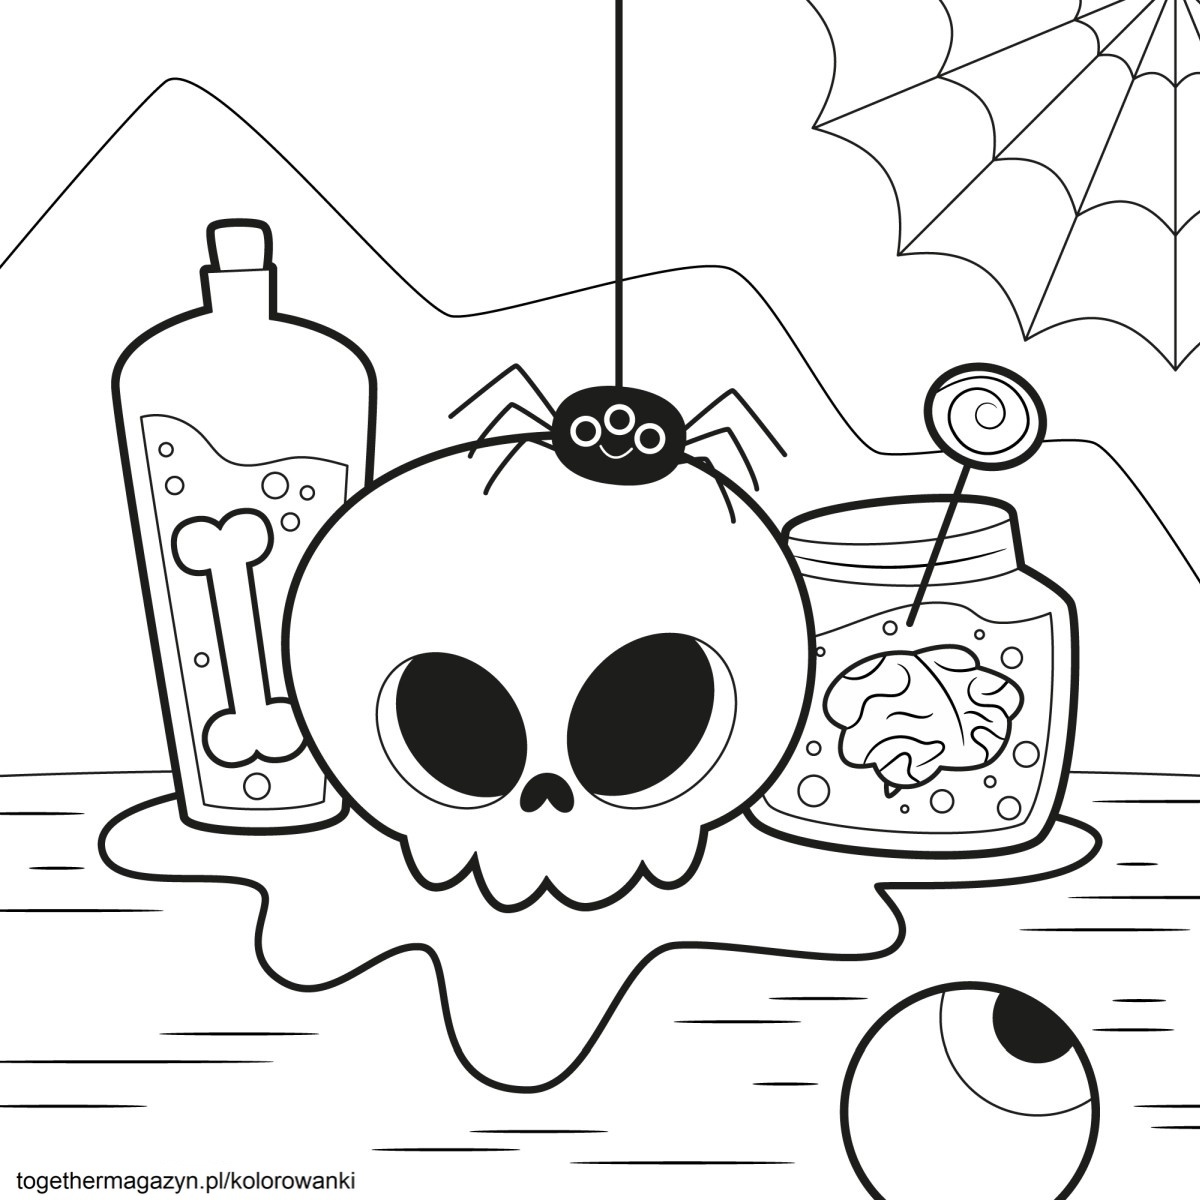 Kolorowanki Halloween - wydrukuj i pokoloruj za darmo czaszkę na Halloween!